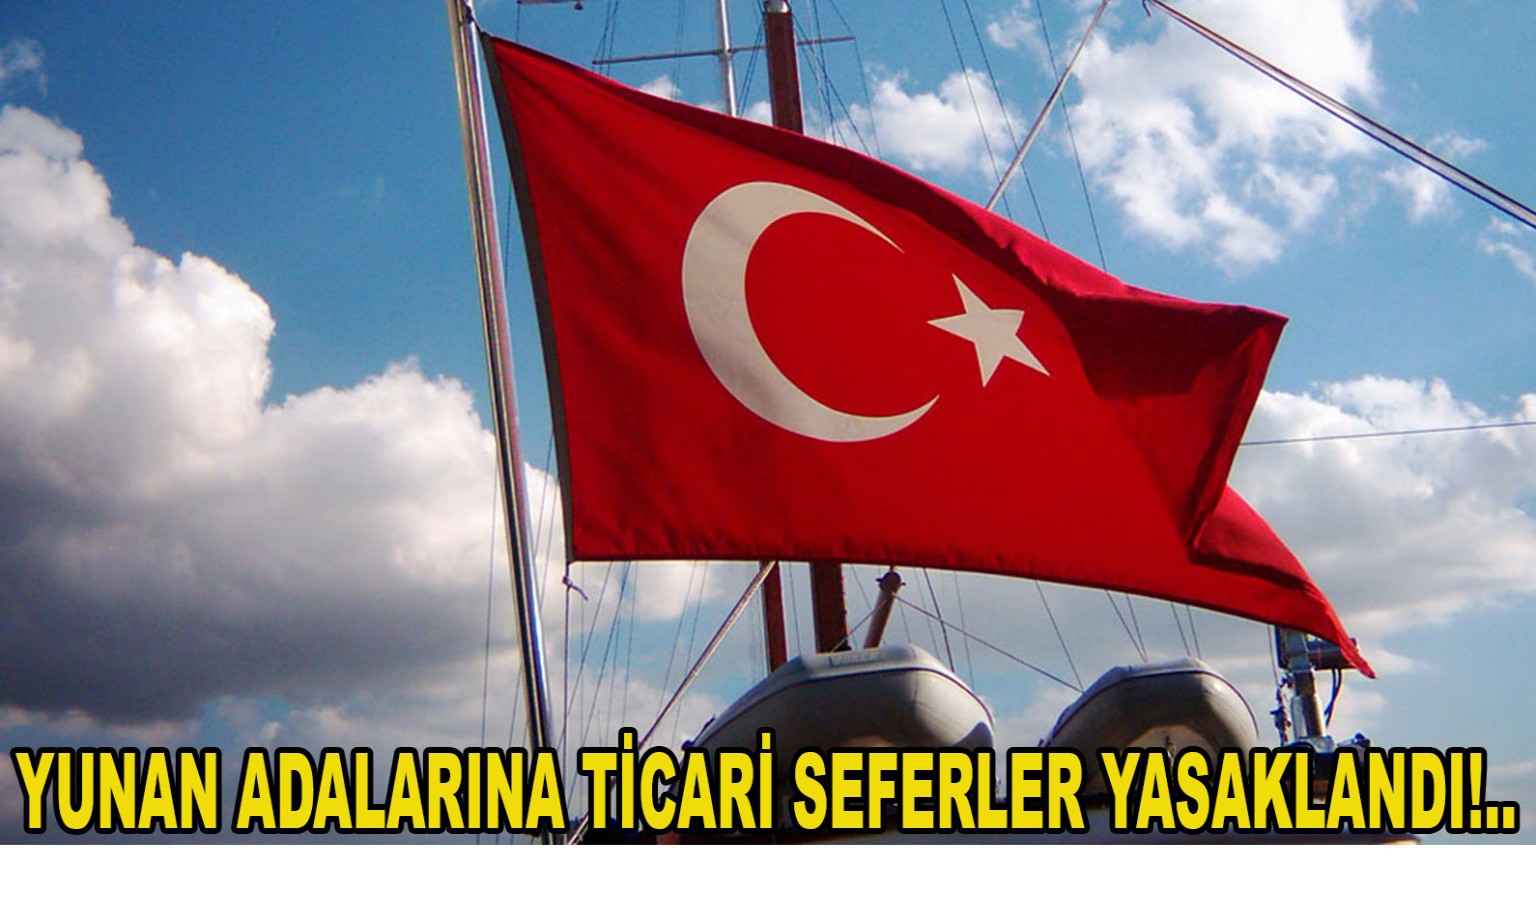 YUNAN ADALARINA TİCARİ SEFERLER YASAKLANDI!..